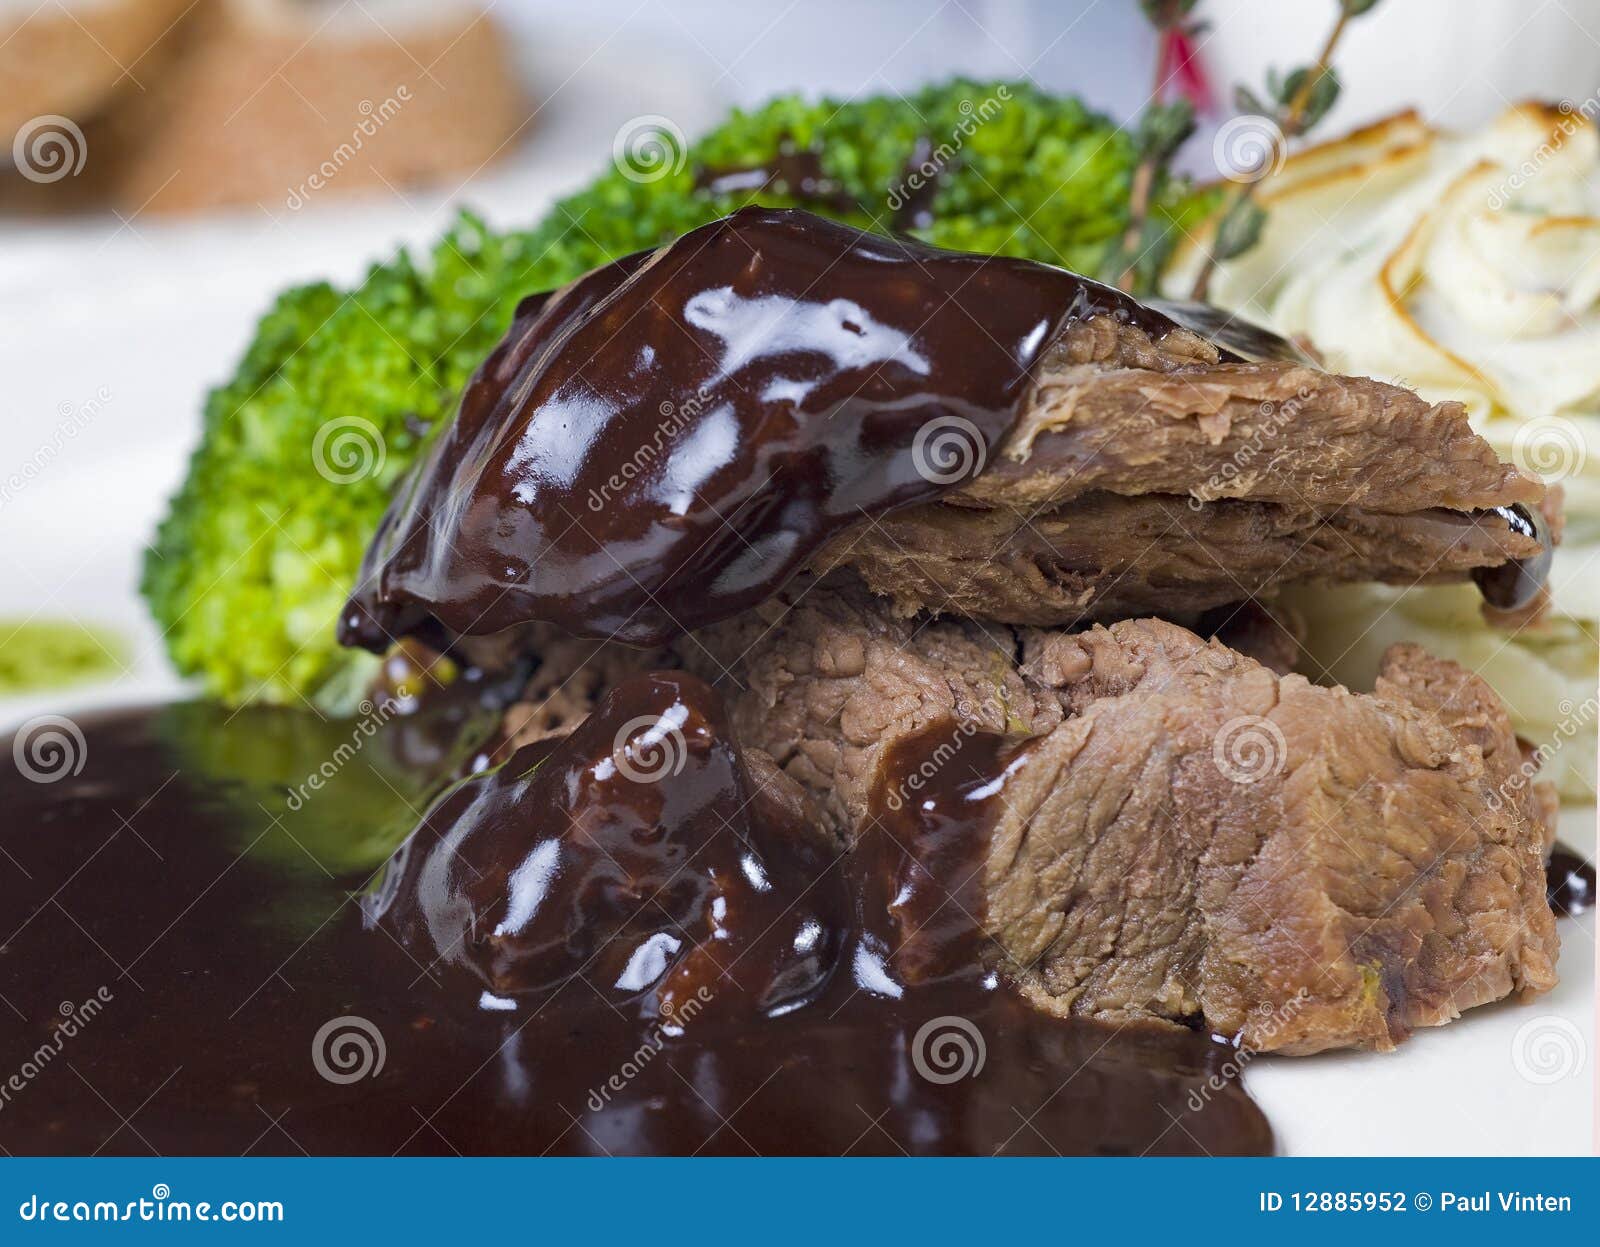 camel steak in chocolate sauce a la carte